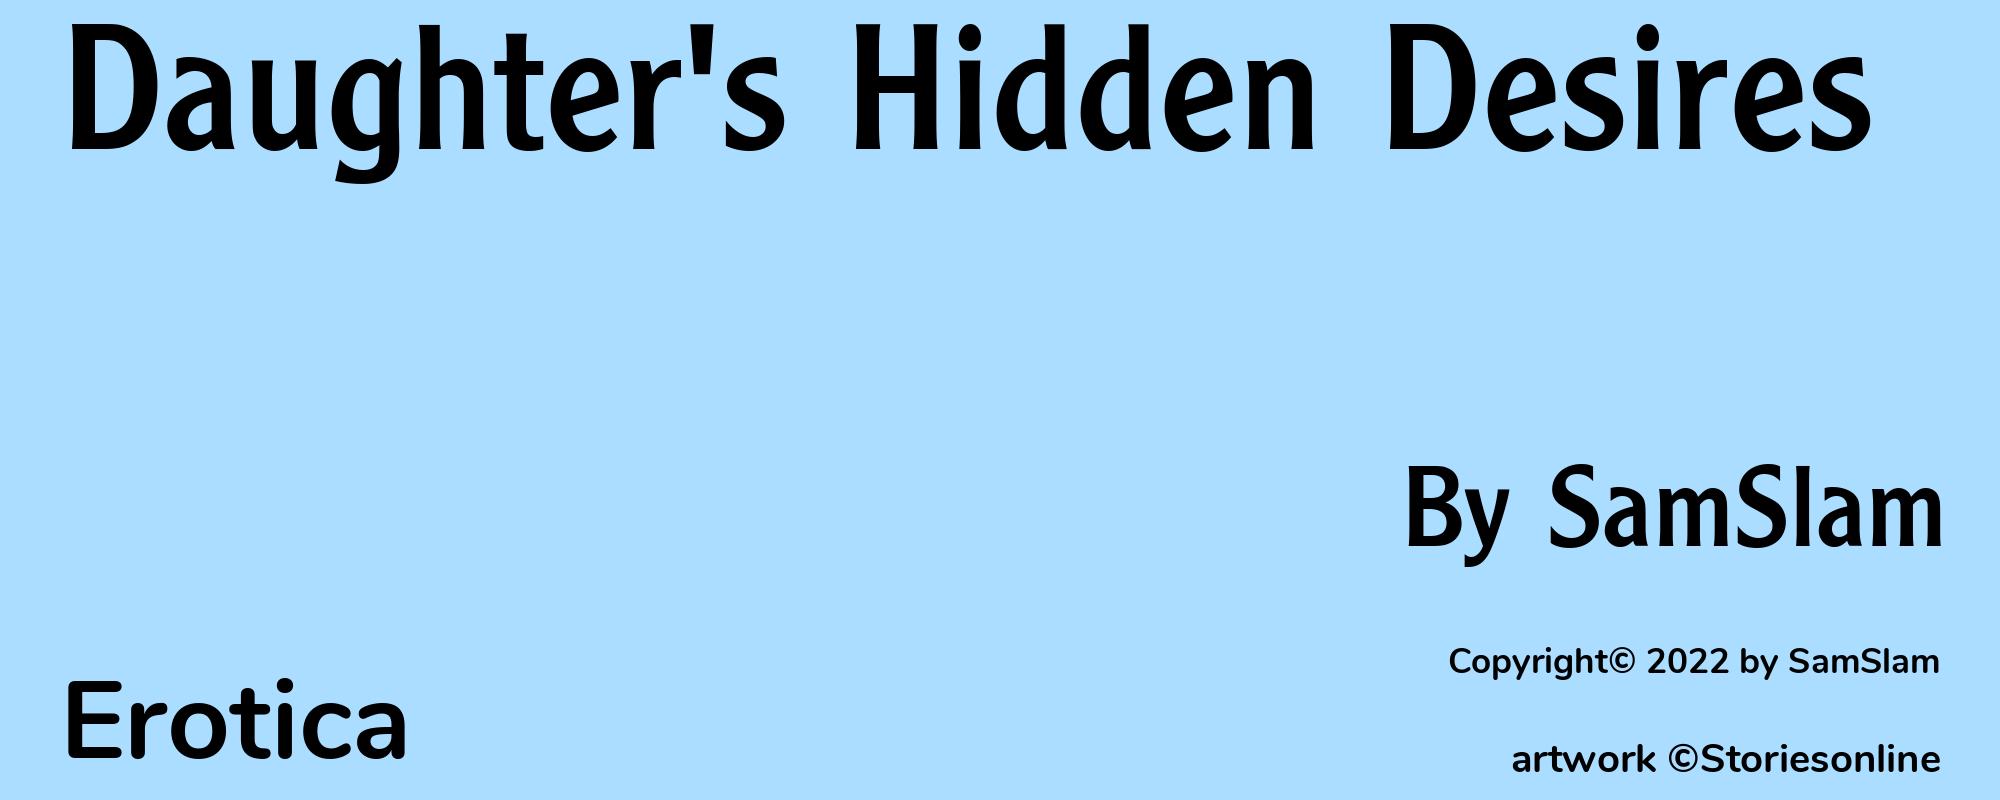 Daughter's Hidden Desires - Cover